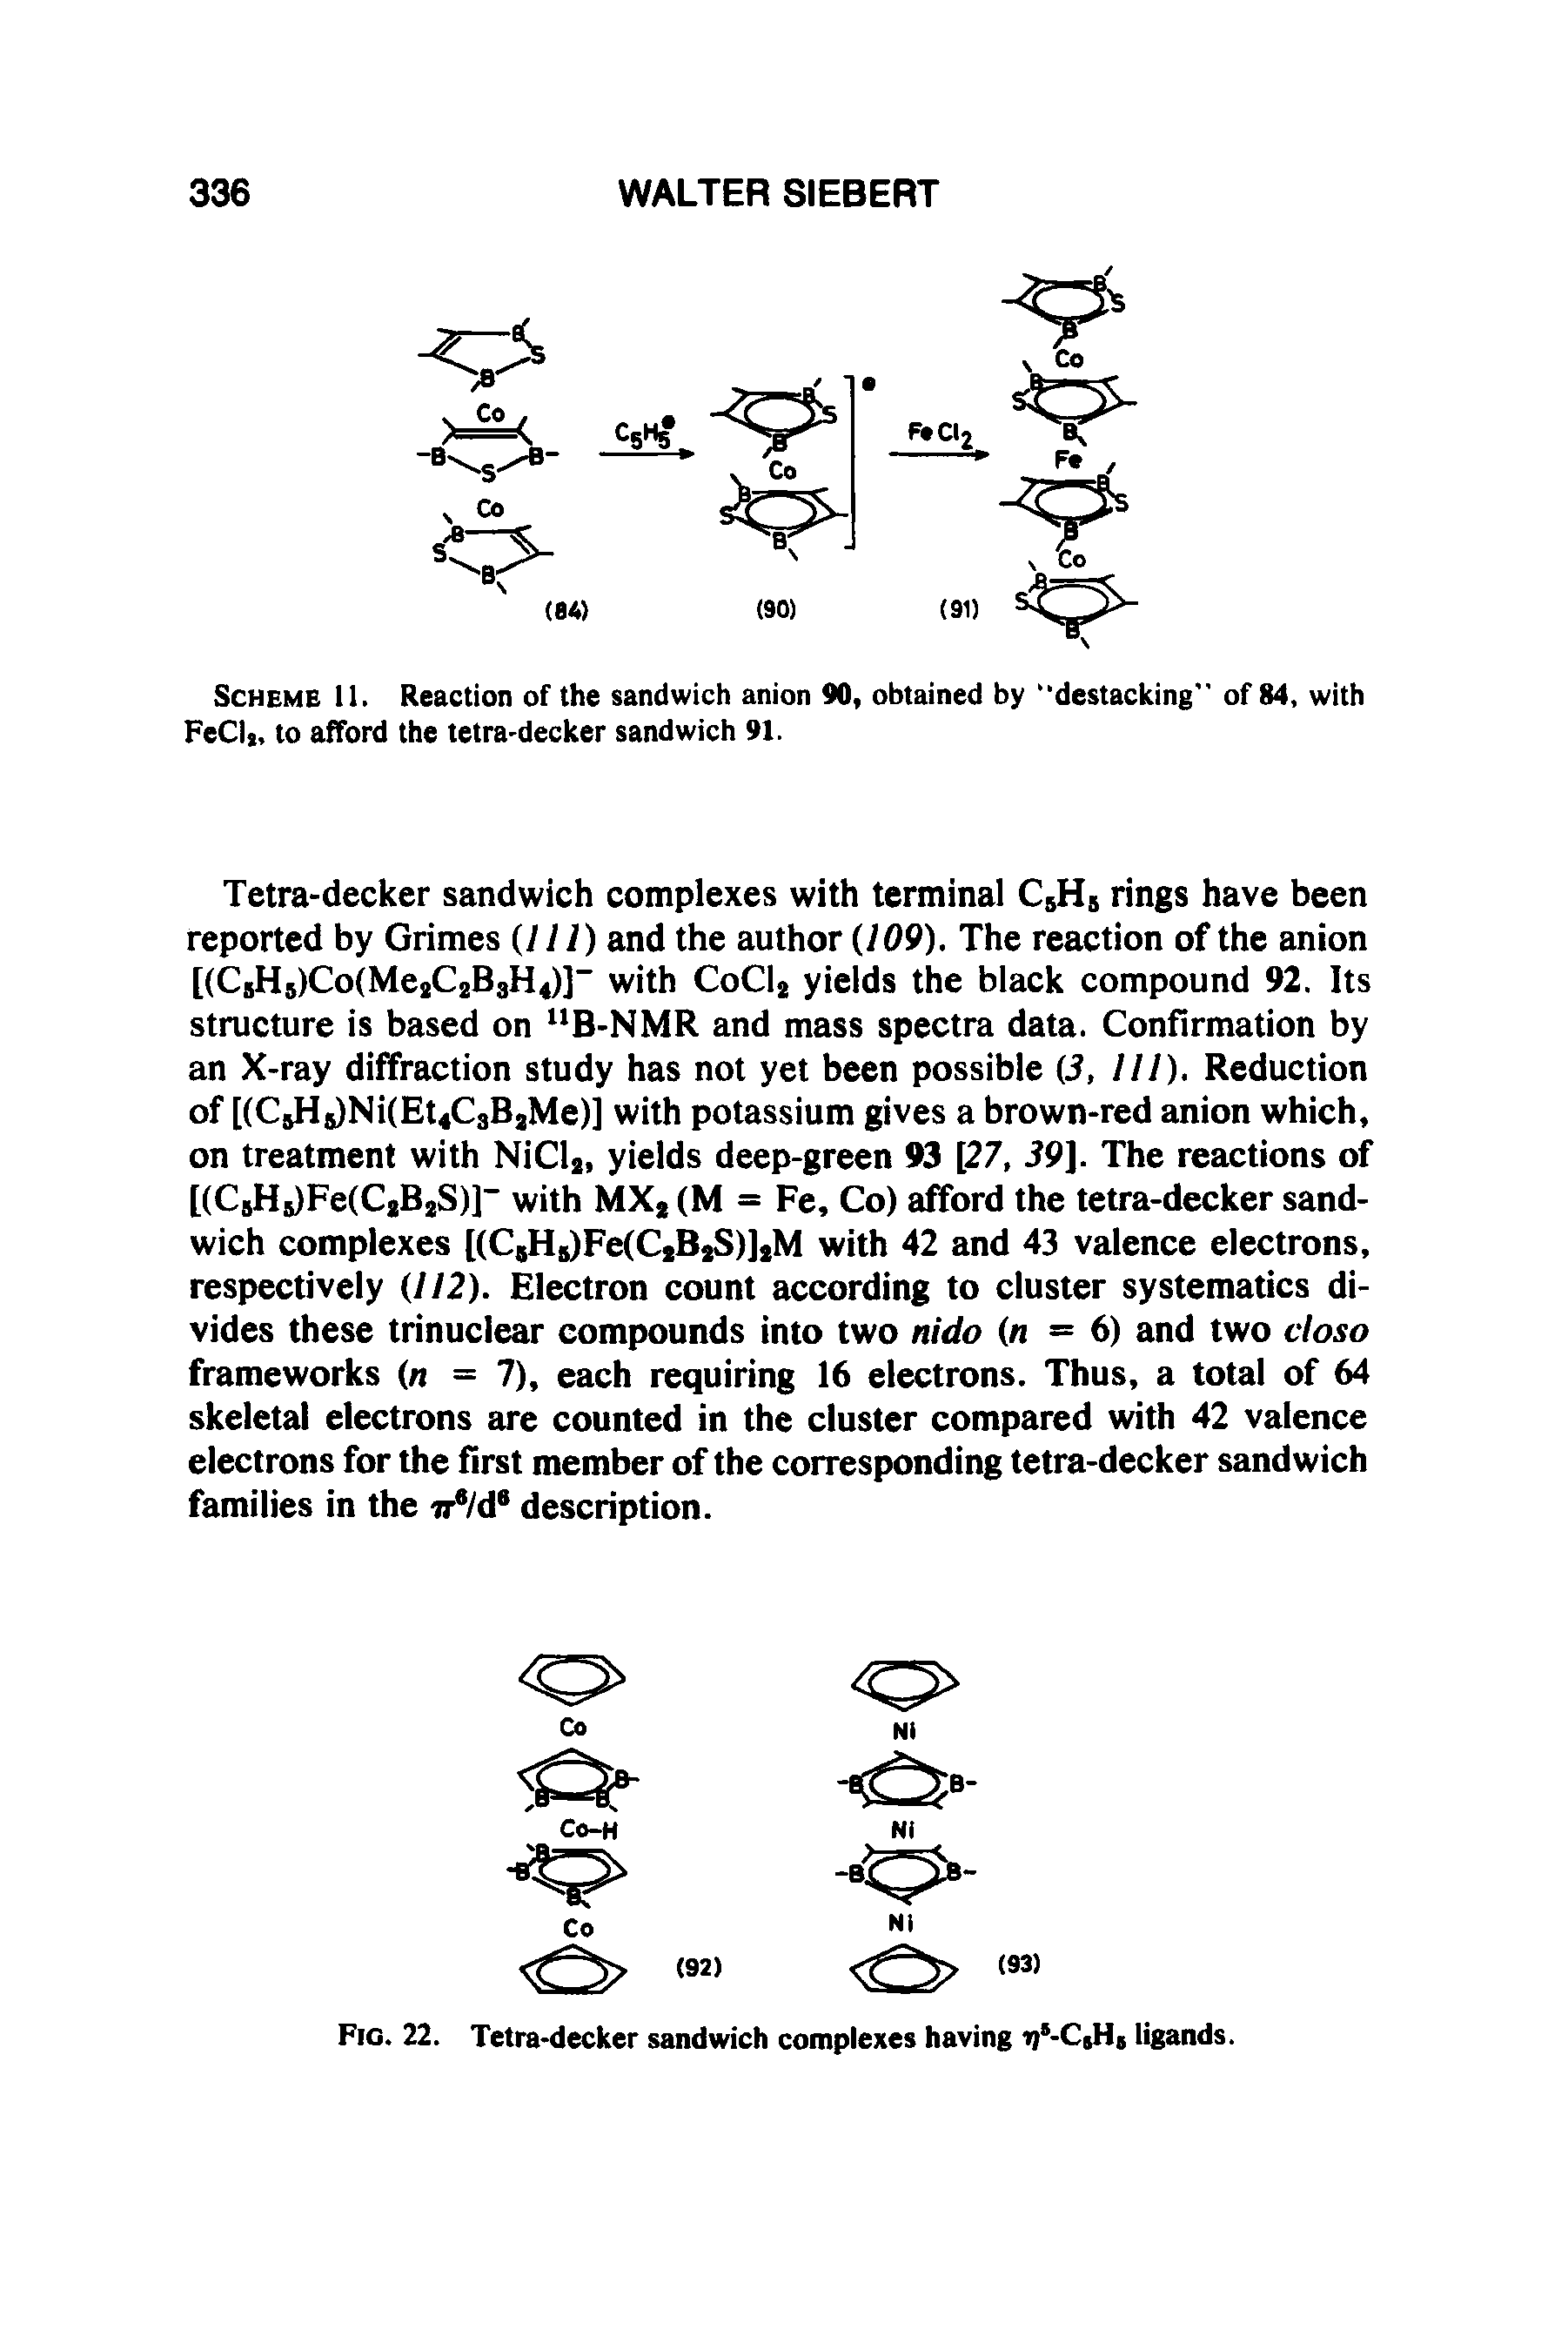 Fig. 22. Tetra-decker sandwich complexes having i) -CjH5 ligands.